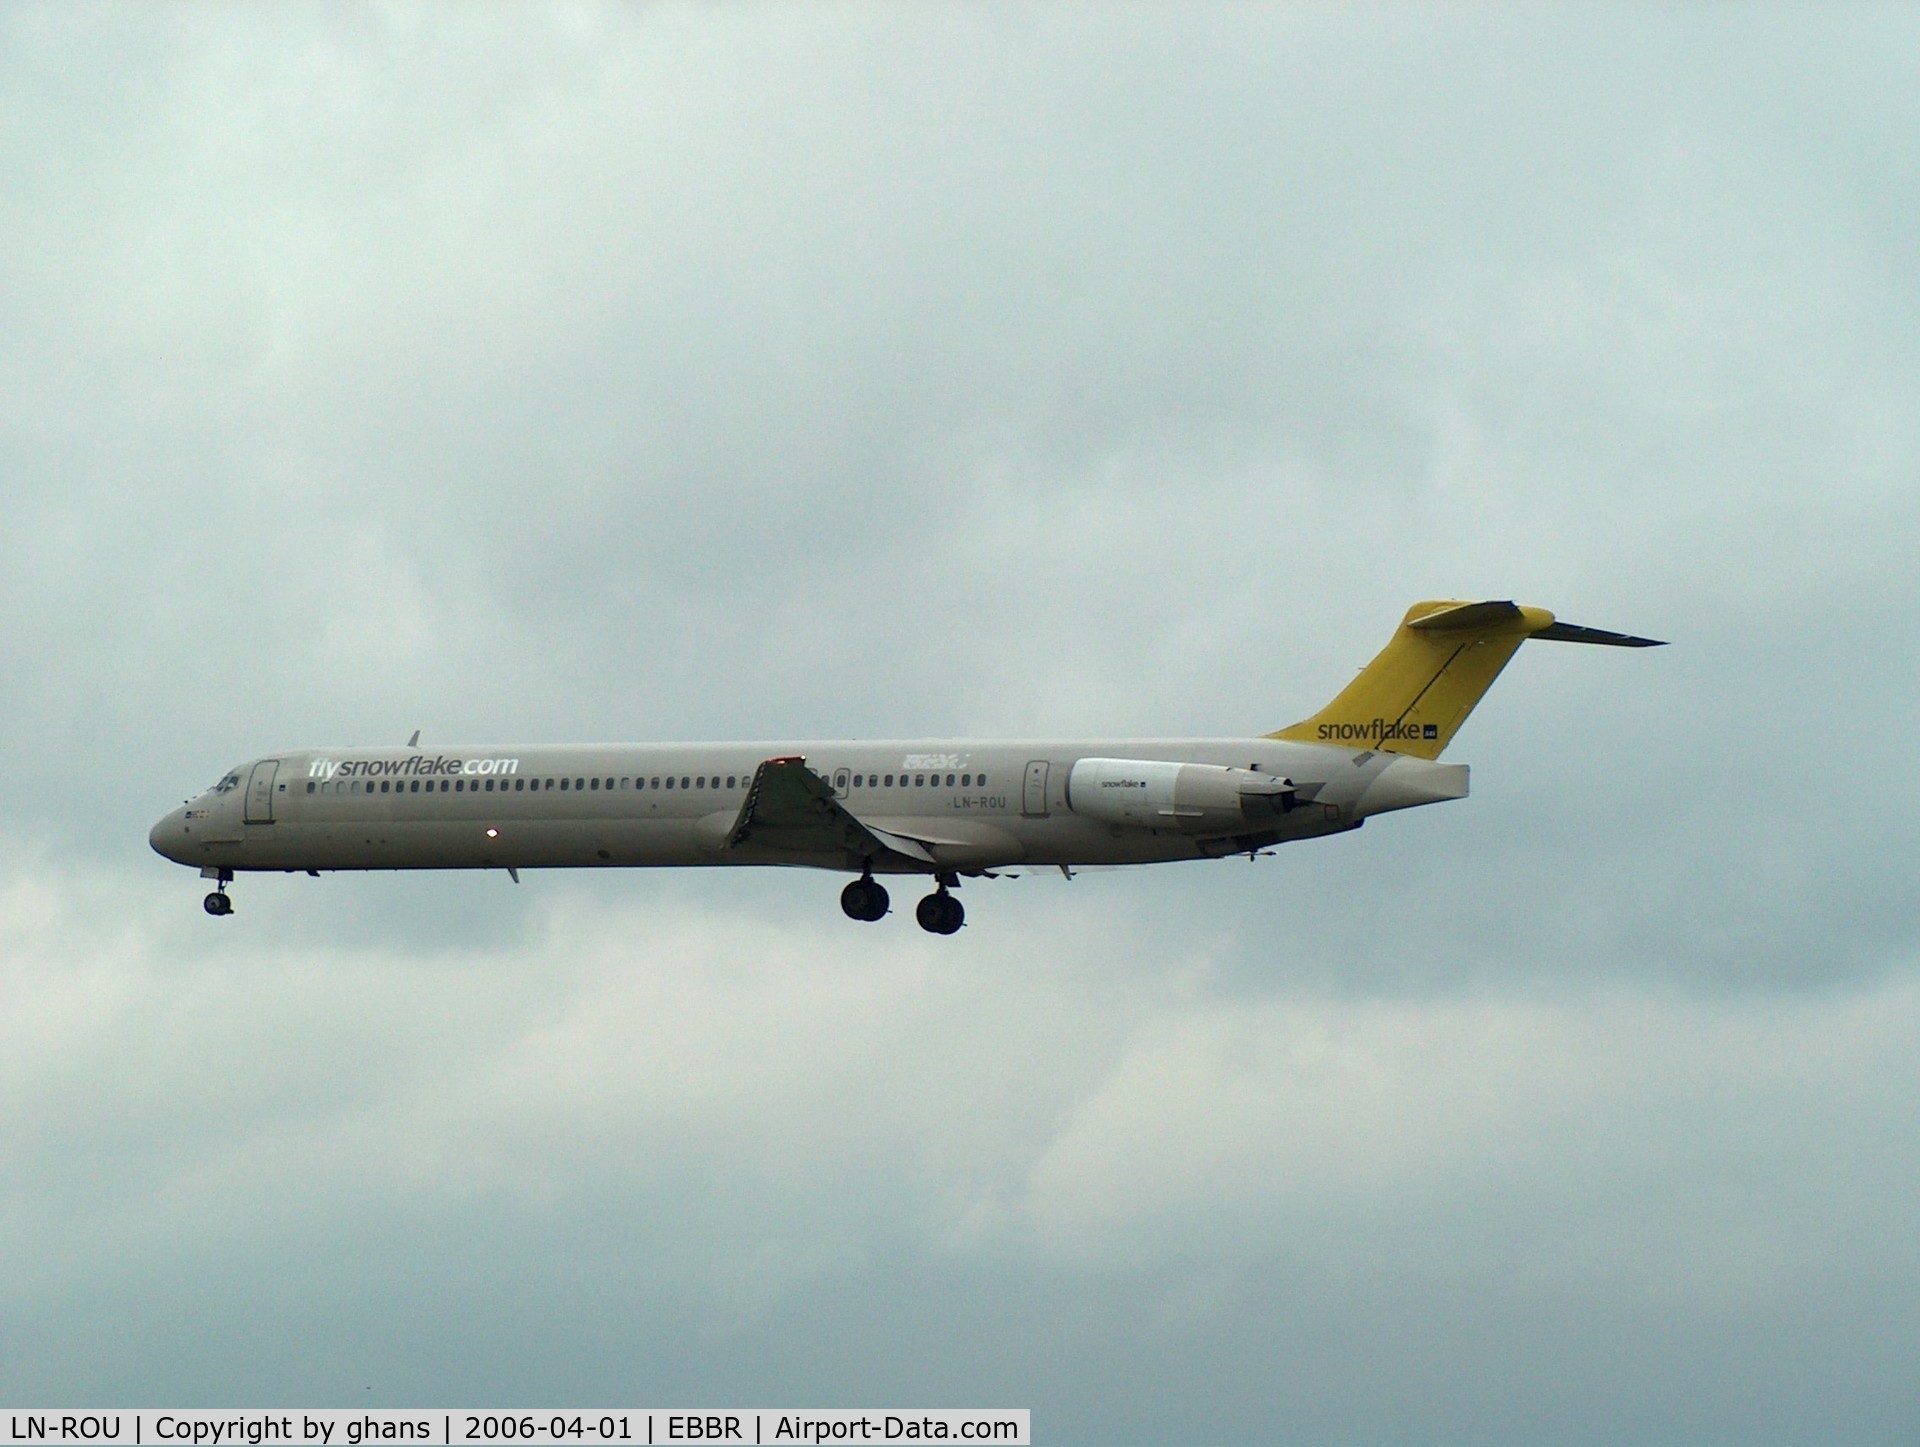 LN-ROU, 1986 McDonnell Douglas MD-82 (DC-9-82) C/N 49424, Snowflake